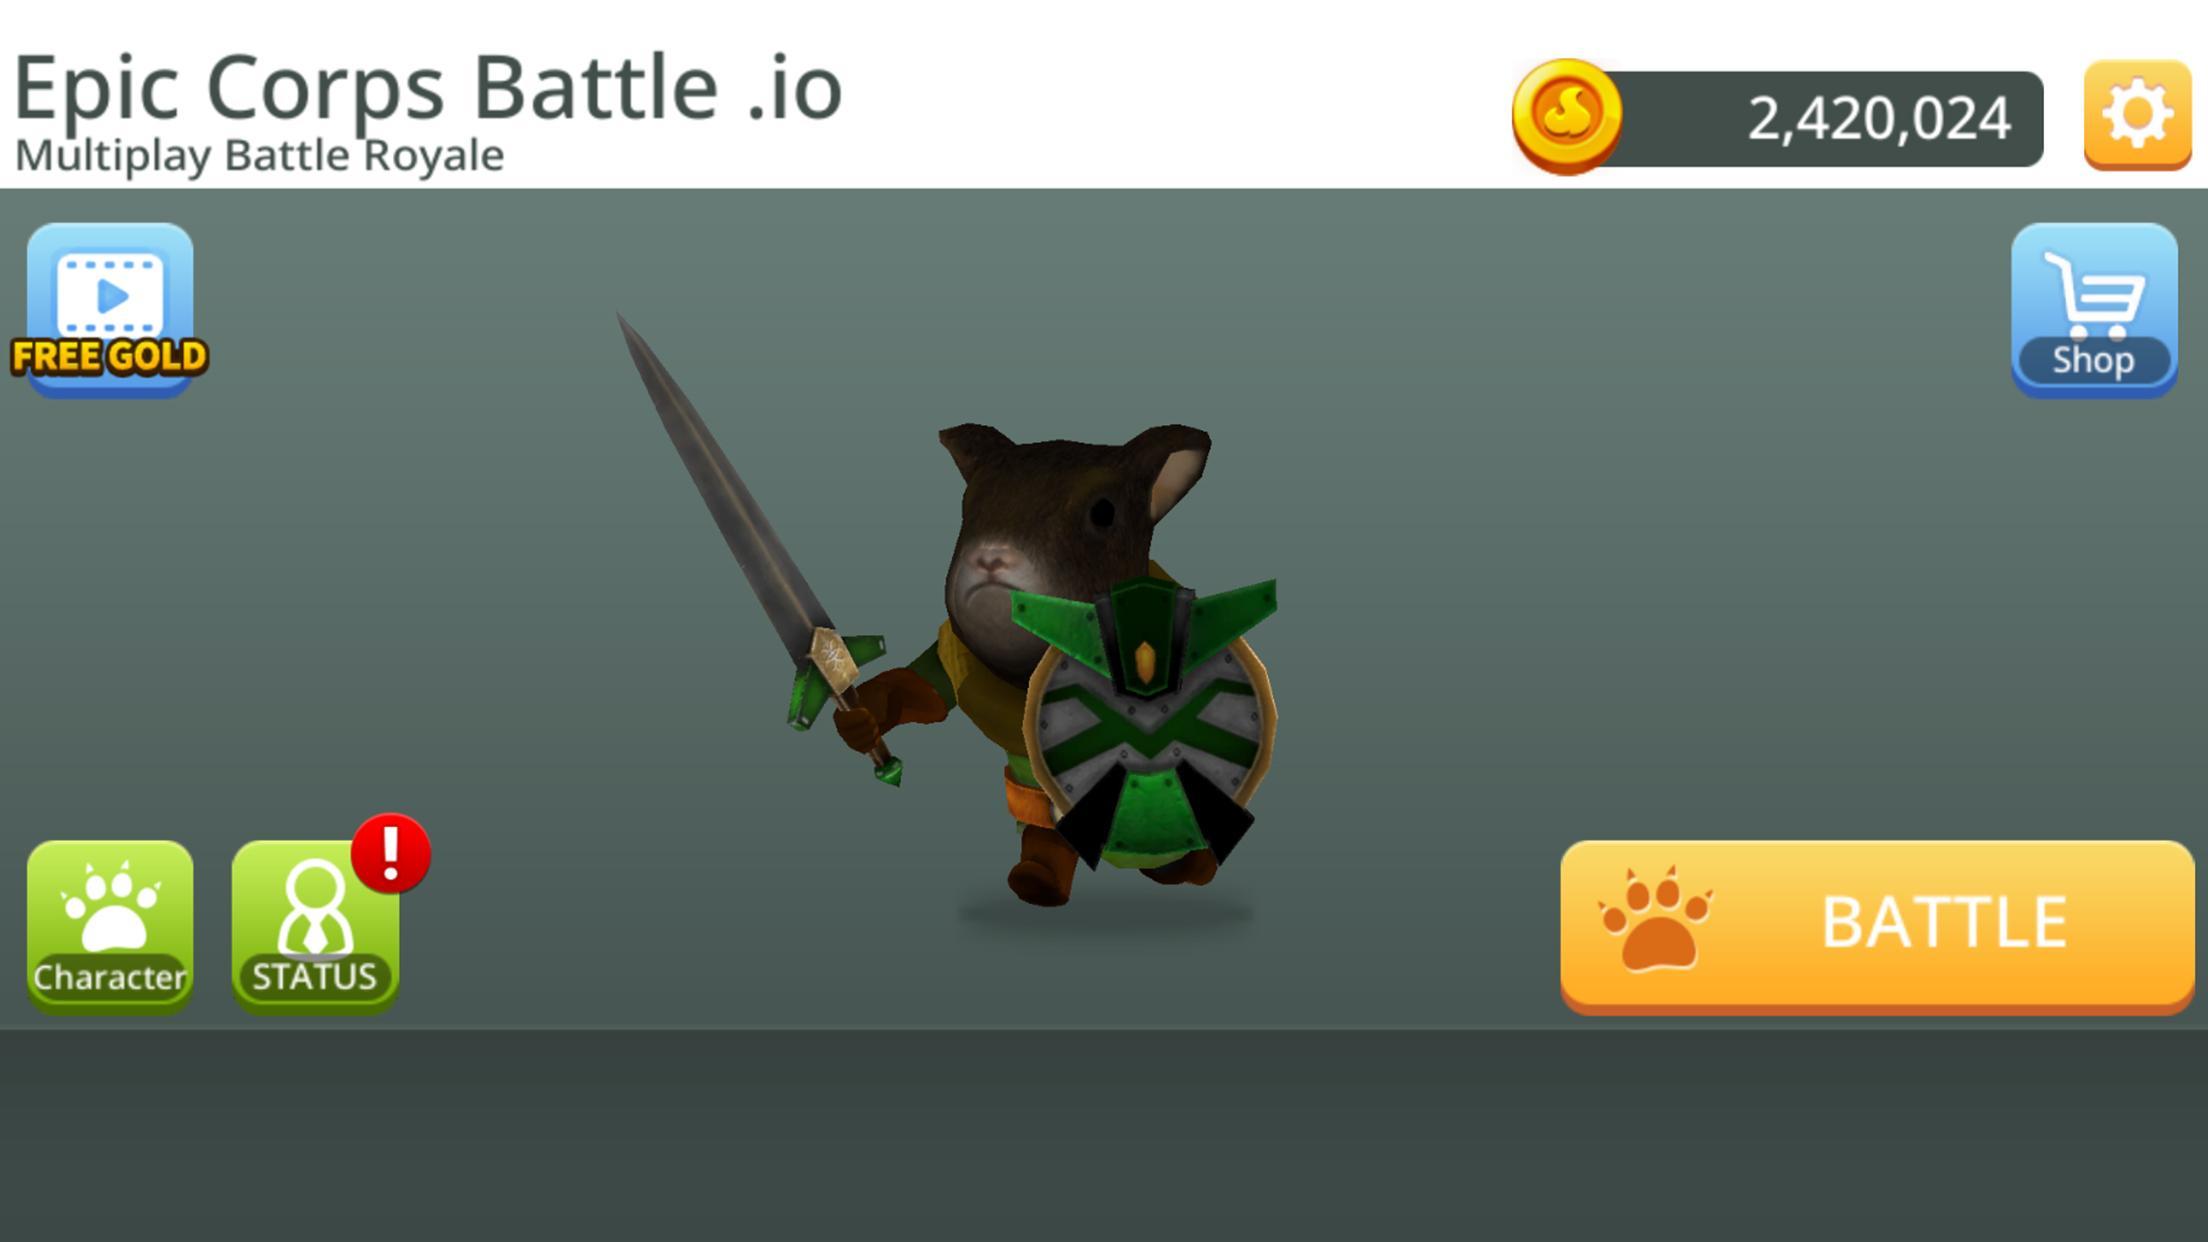 Screenshot 1 of Epic Corps Battle .io - Nhiều người chơi Battle Royale 0.5.0